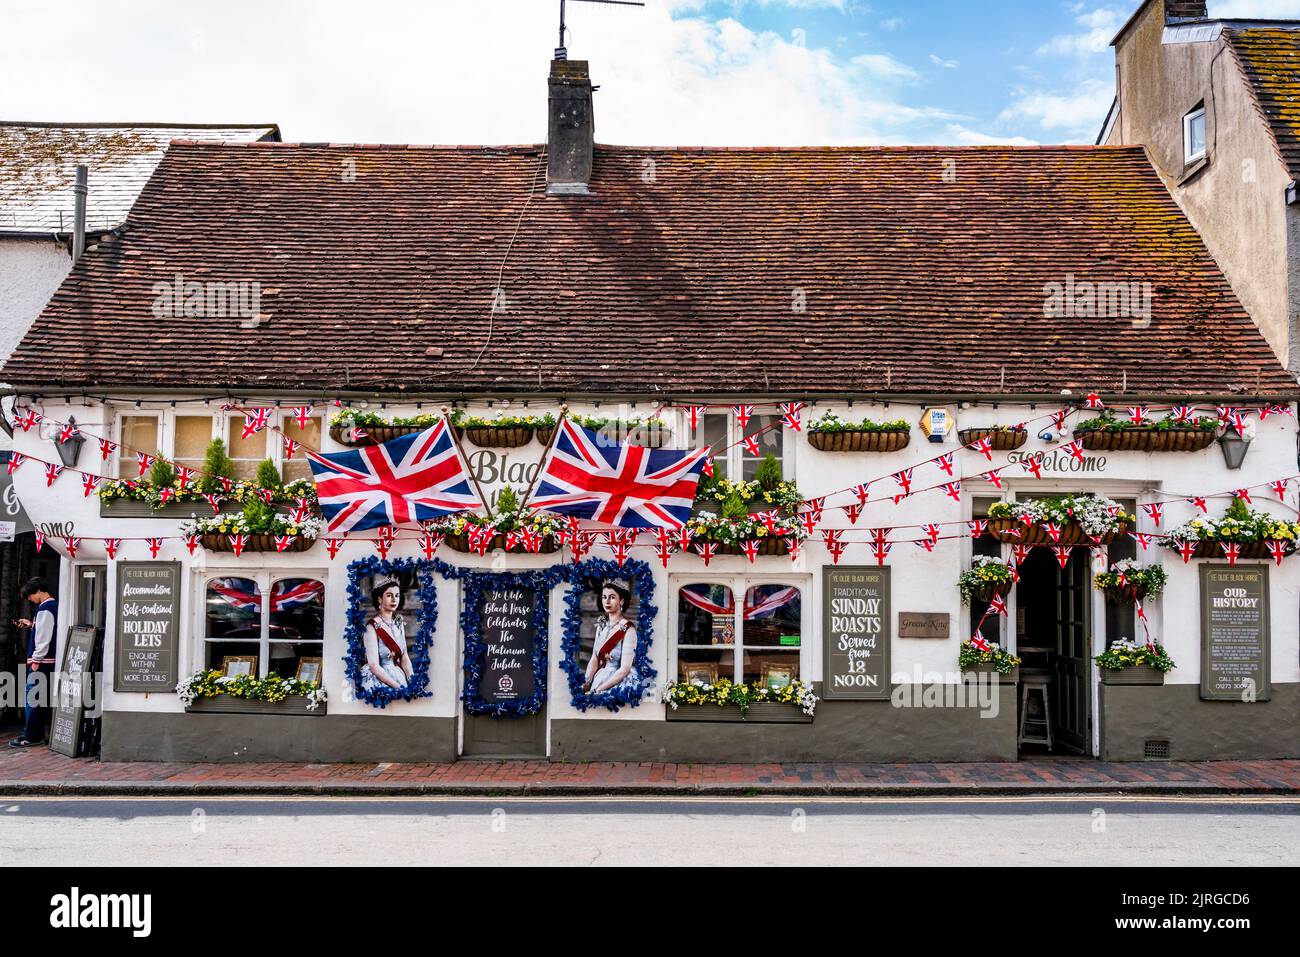 Banderas y Retratos de la Reina adornan el Front of the Black Horse Pub durante las celebraciones del Jubileo Platino de la Reina, Rottingdean, Sussex, Reino Unido. Foto de stock